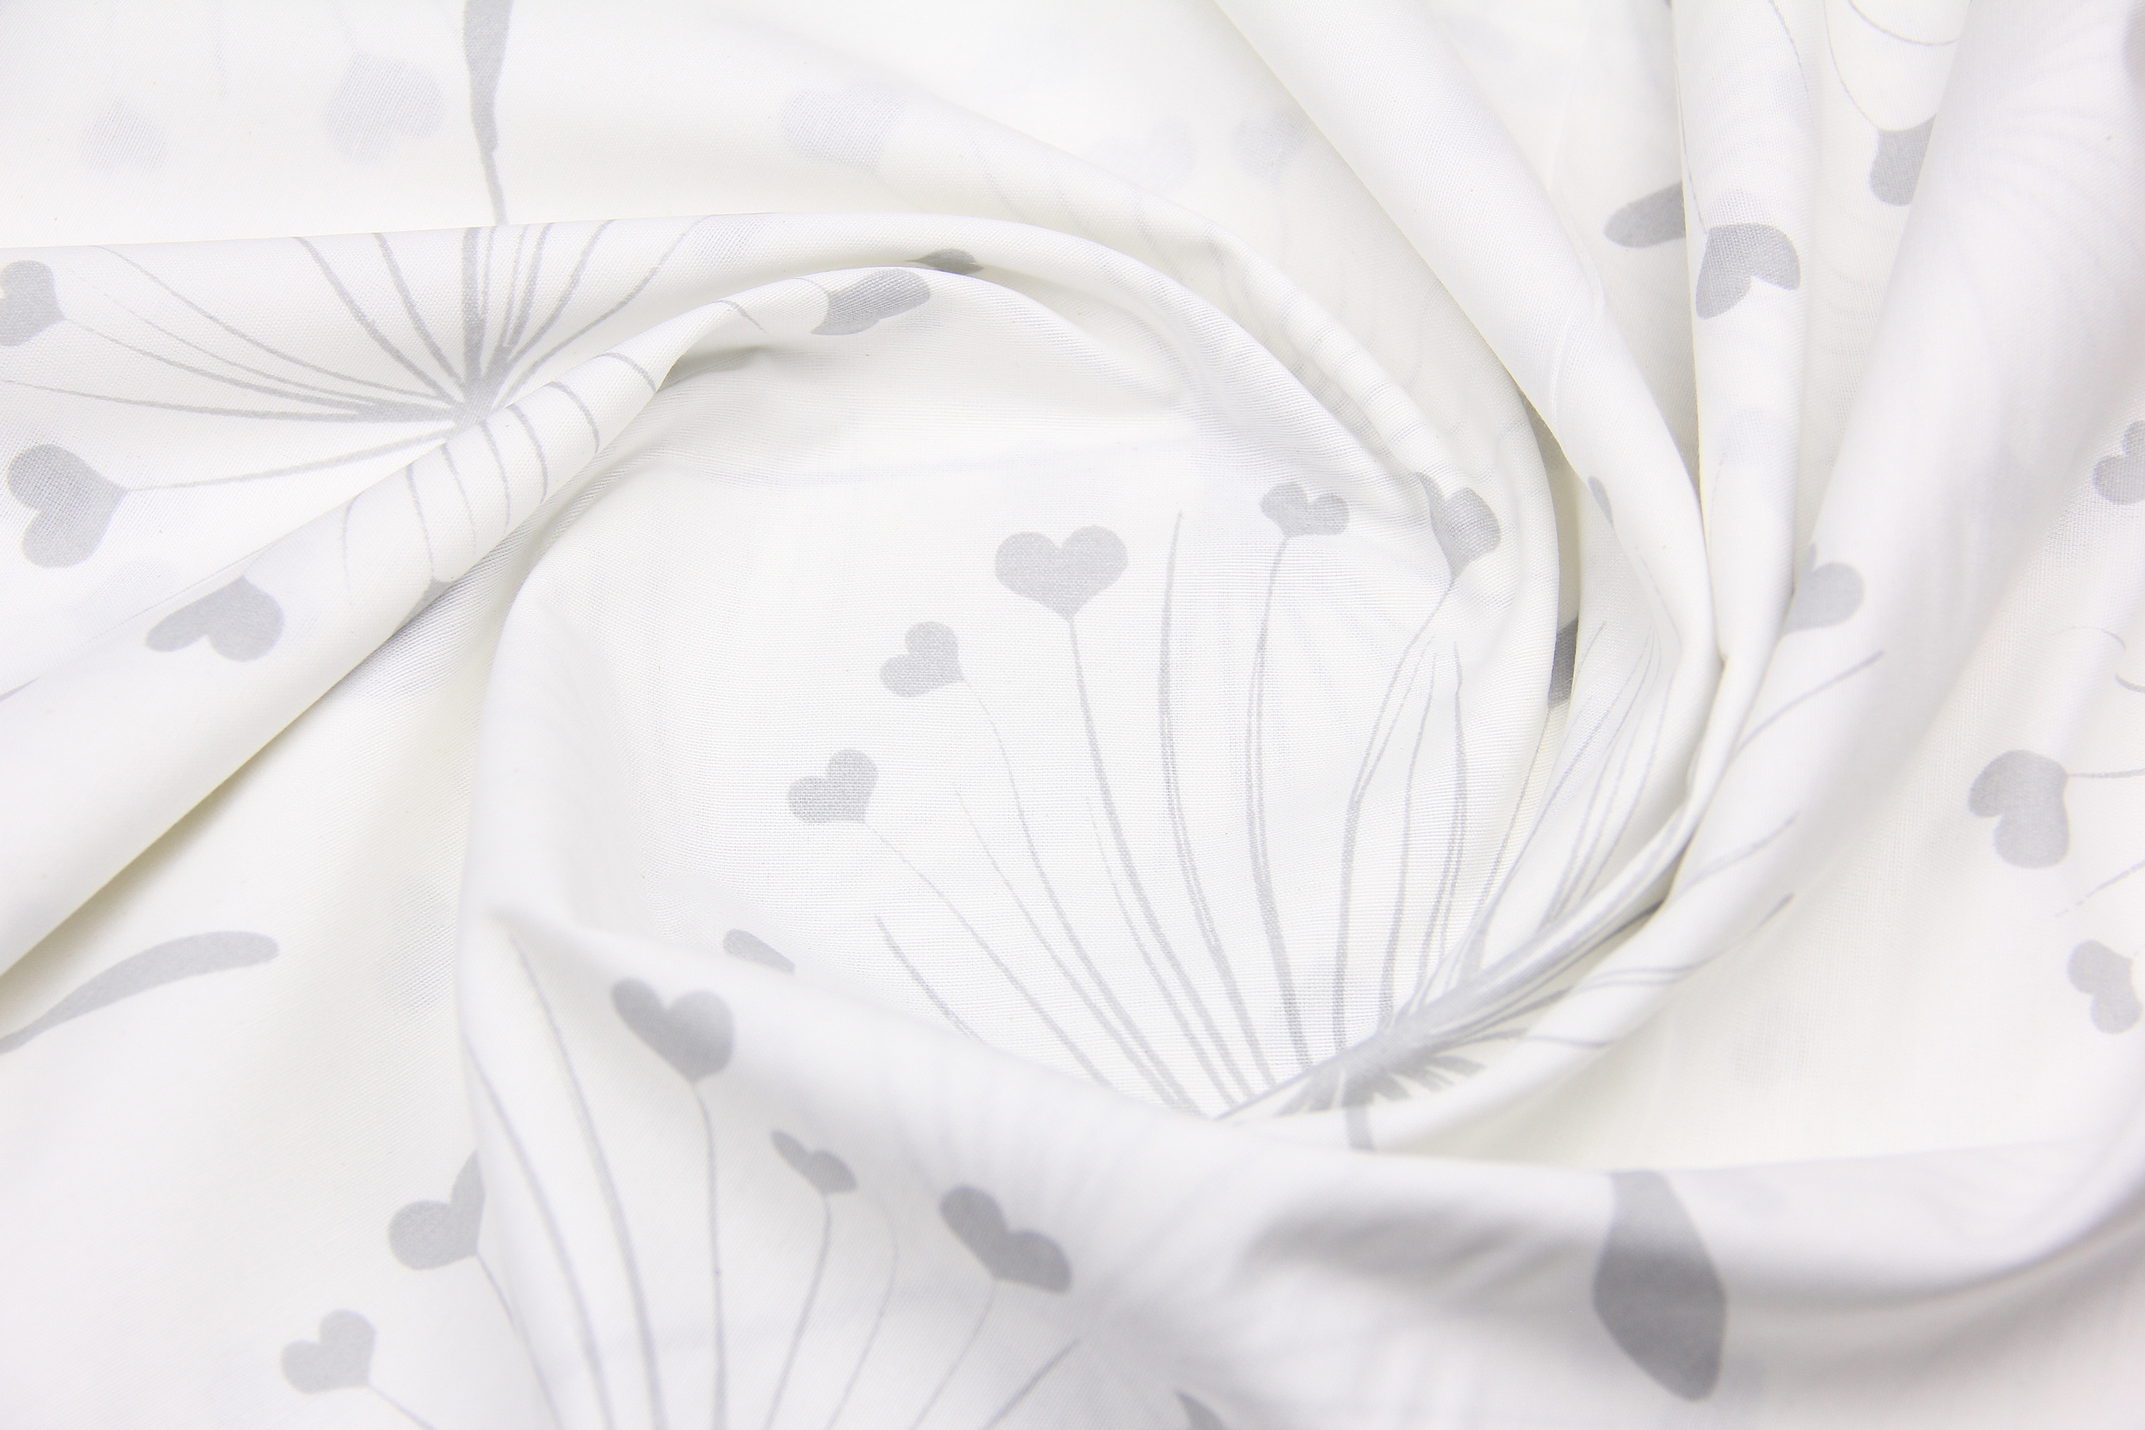 Ткань Ранфорс Влюбленный одуванчик Серый на белом, Турция, ширина 240 см, 70% хлопок 30% ПЭ